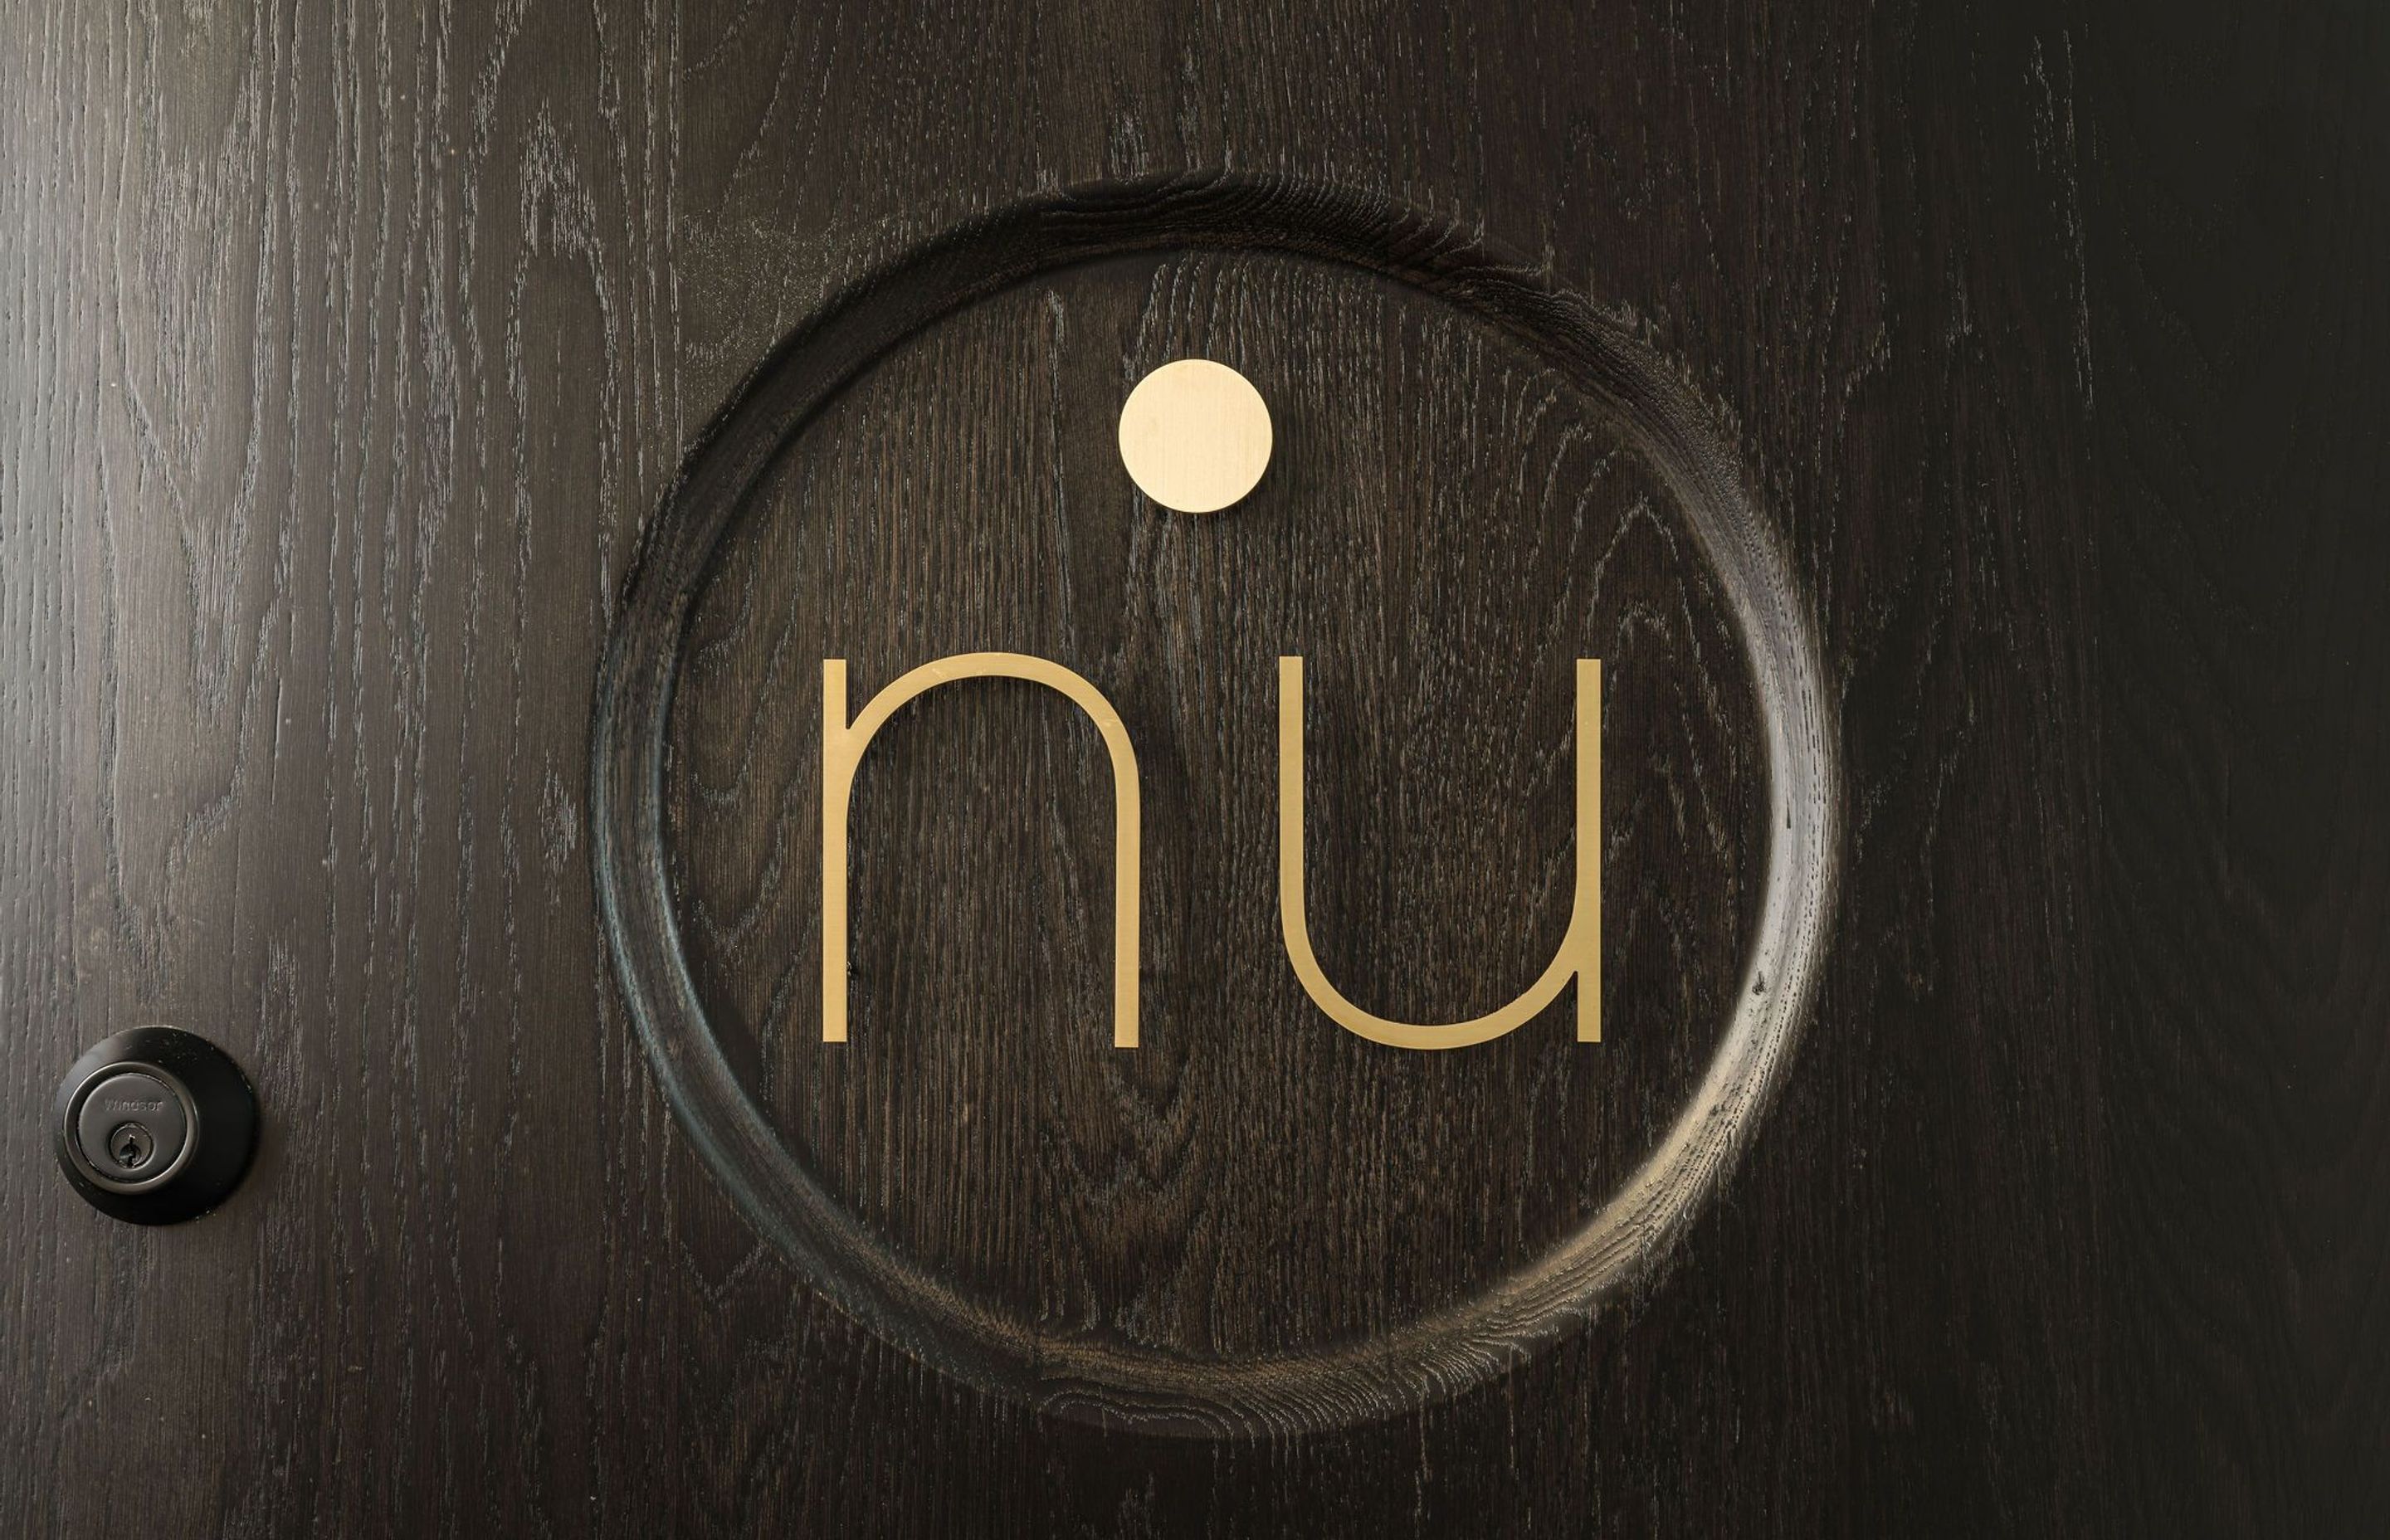 nu Yoga Studio Dunedin. nu Logo on the front door